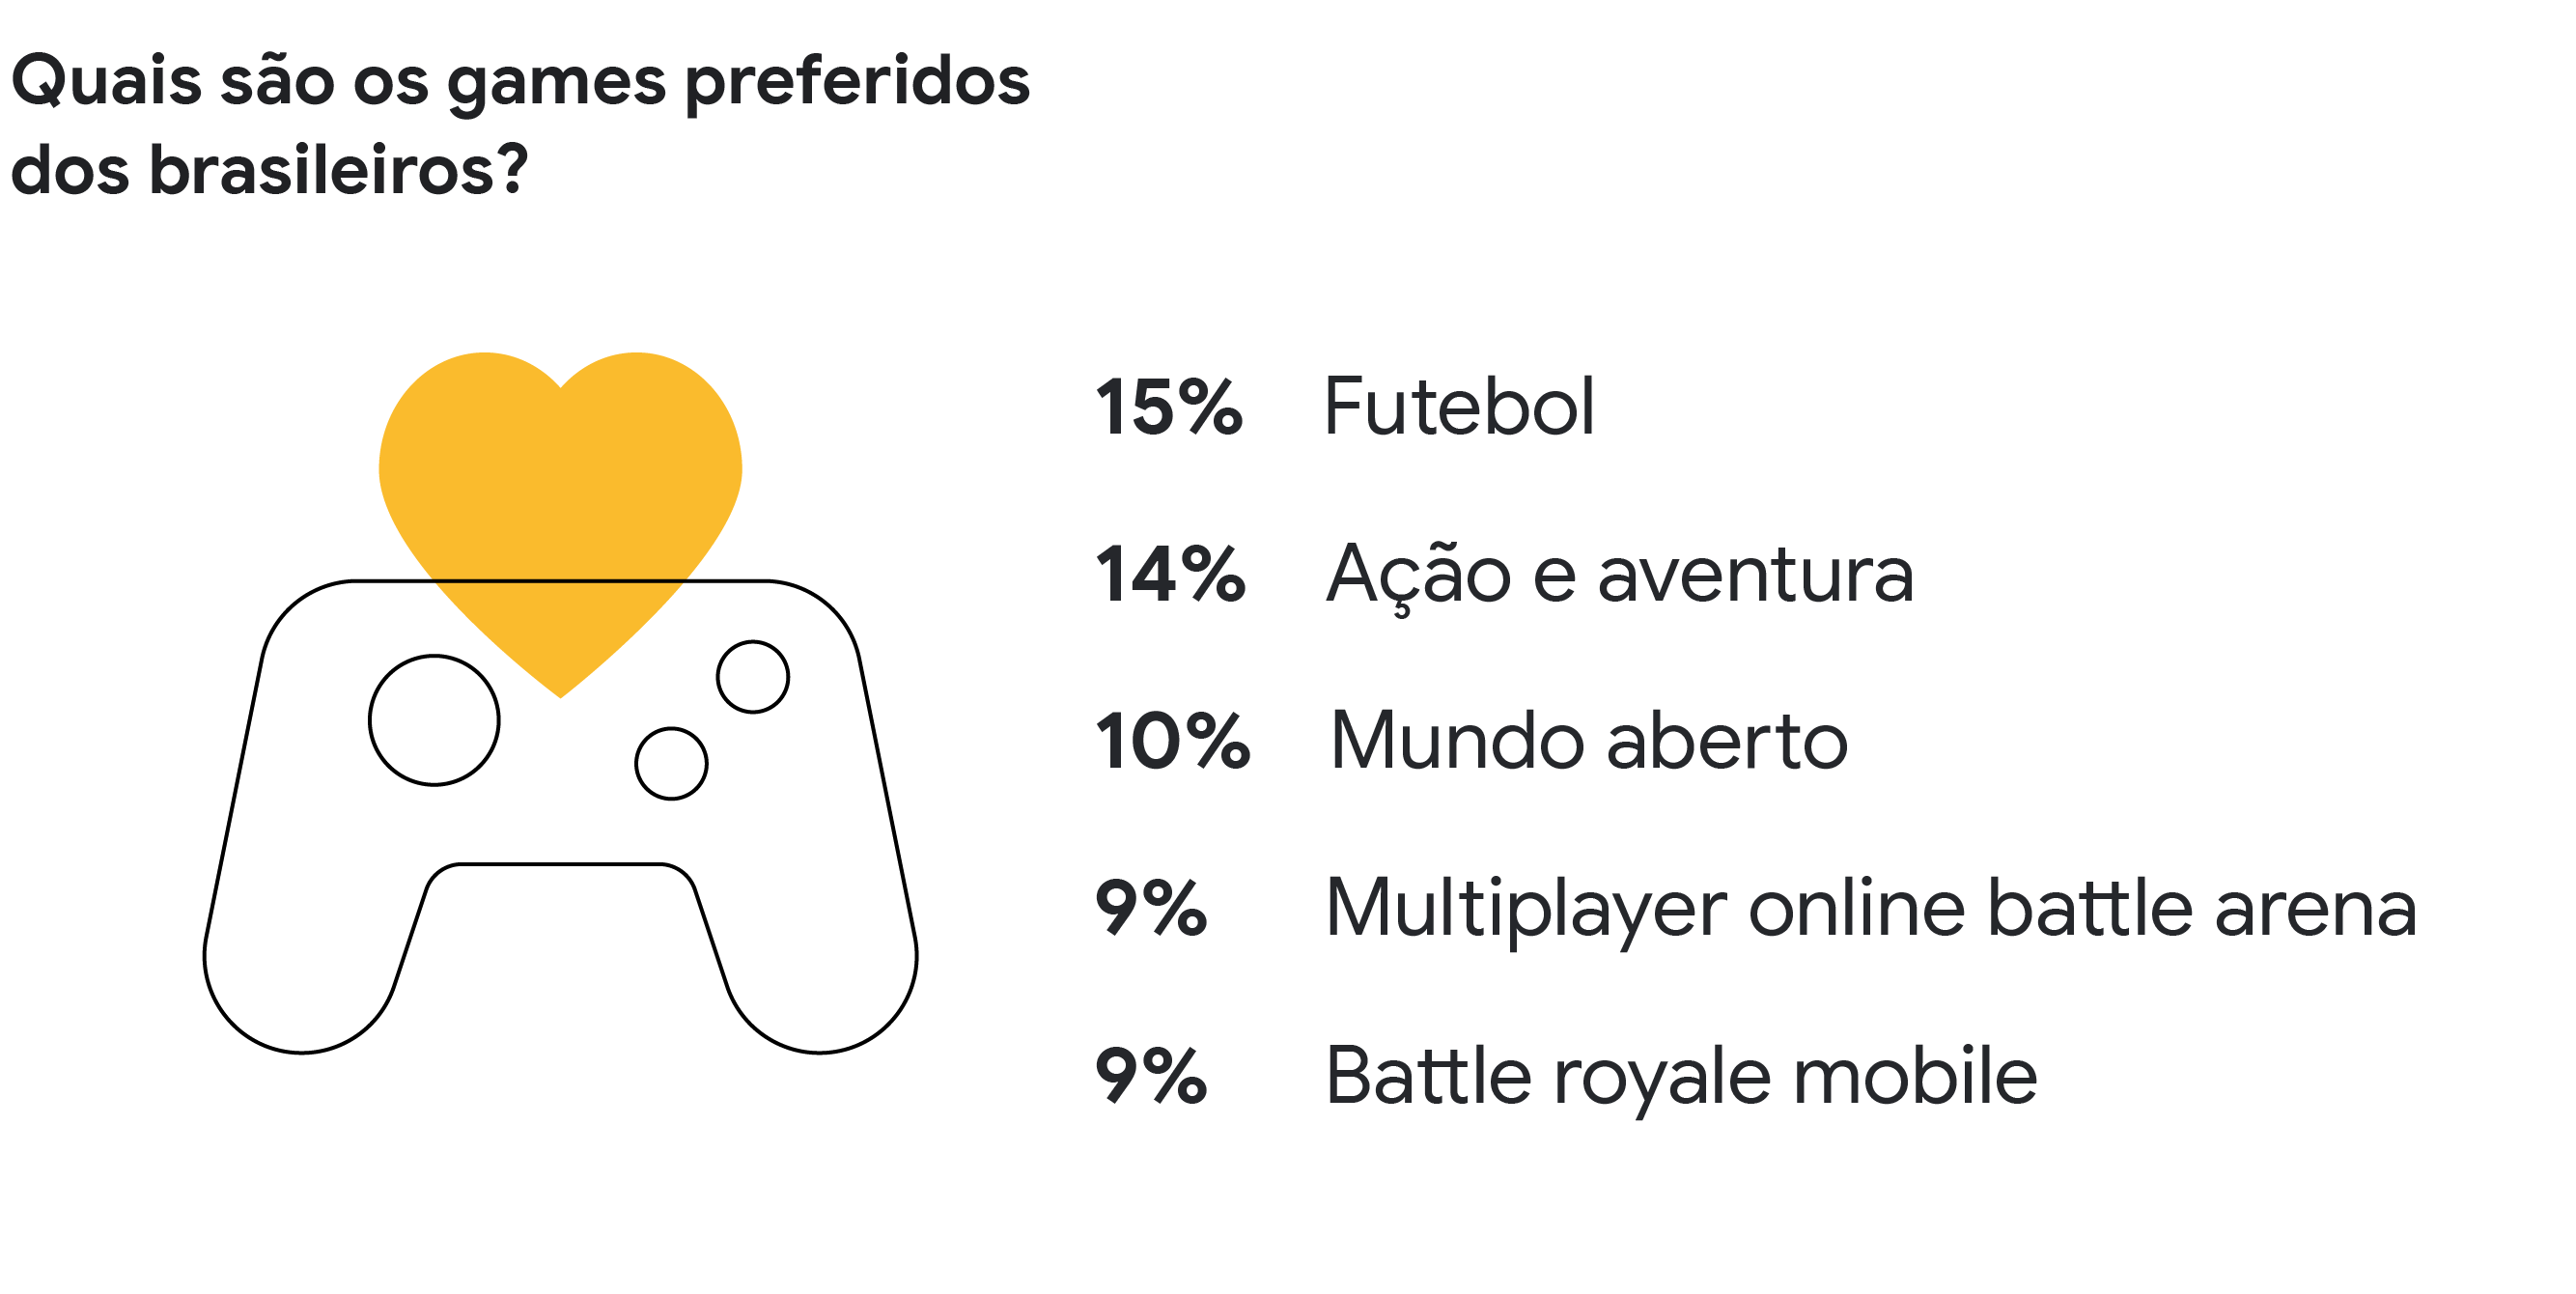 Streamers brasileiros de sucesso no universo gamer